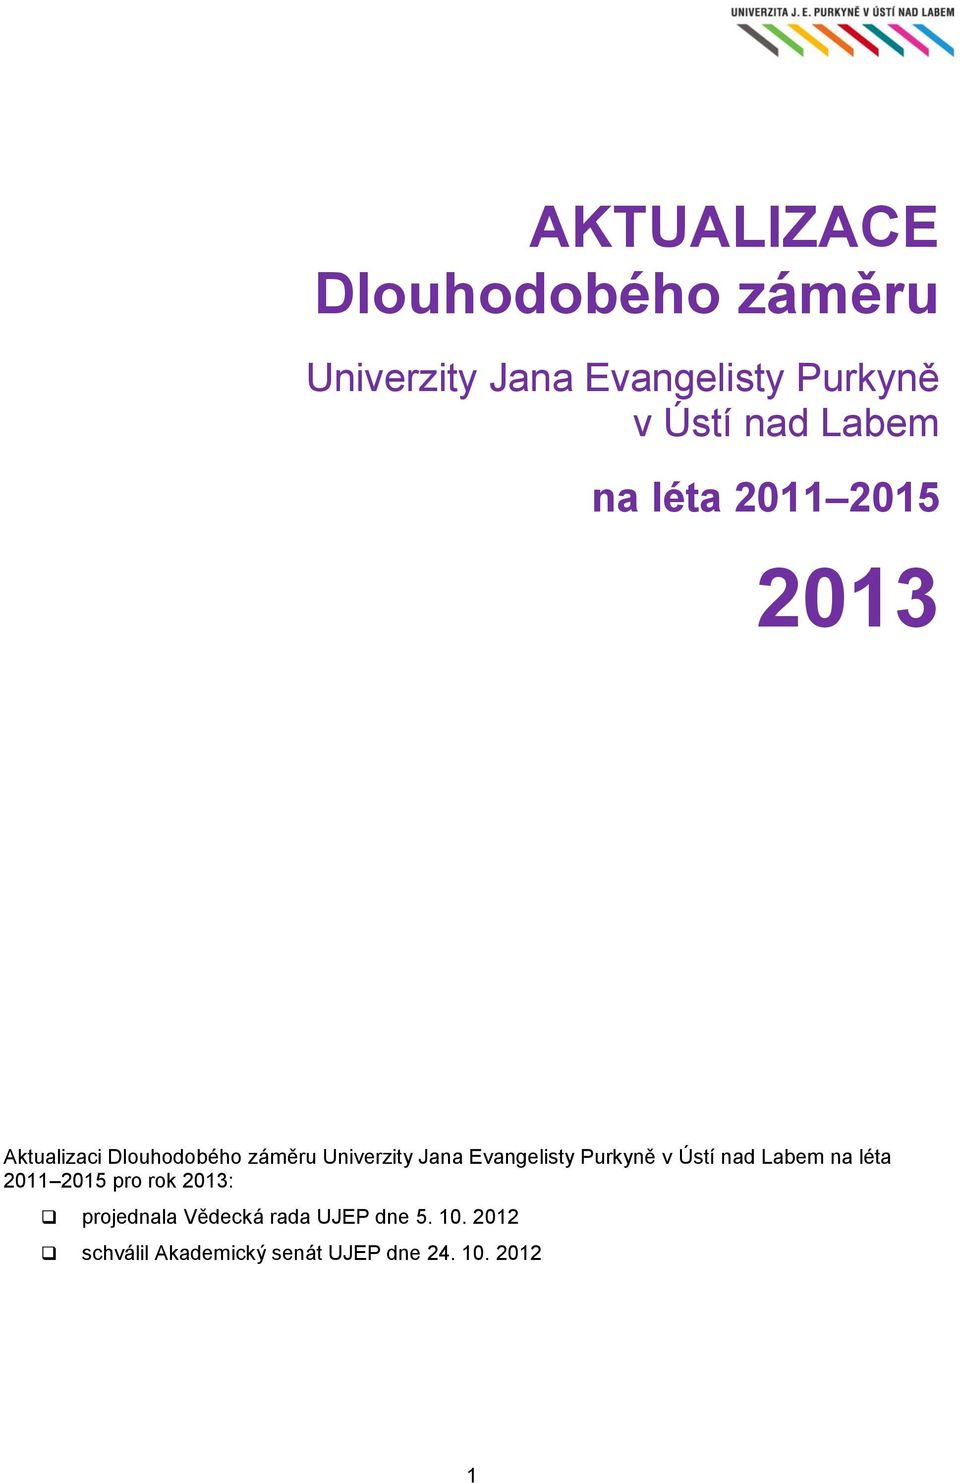 Evangelisty Purkyně v Ústí nad Labem na léta 2011 2015 pro rok 2013: projednala